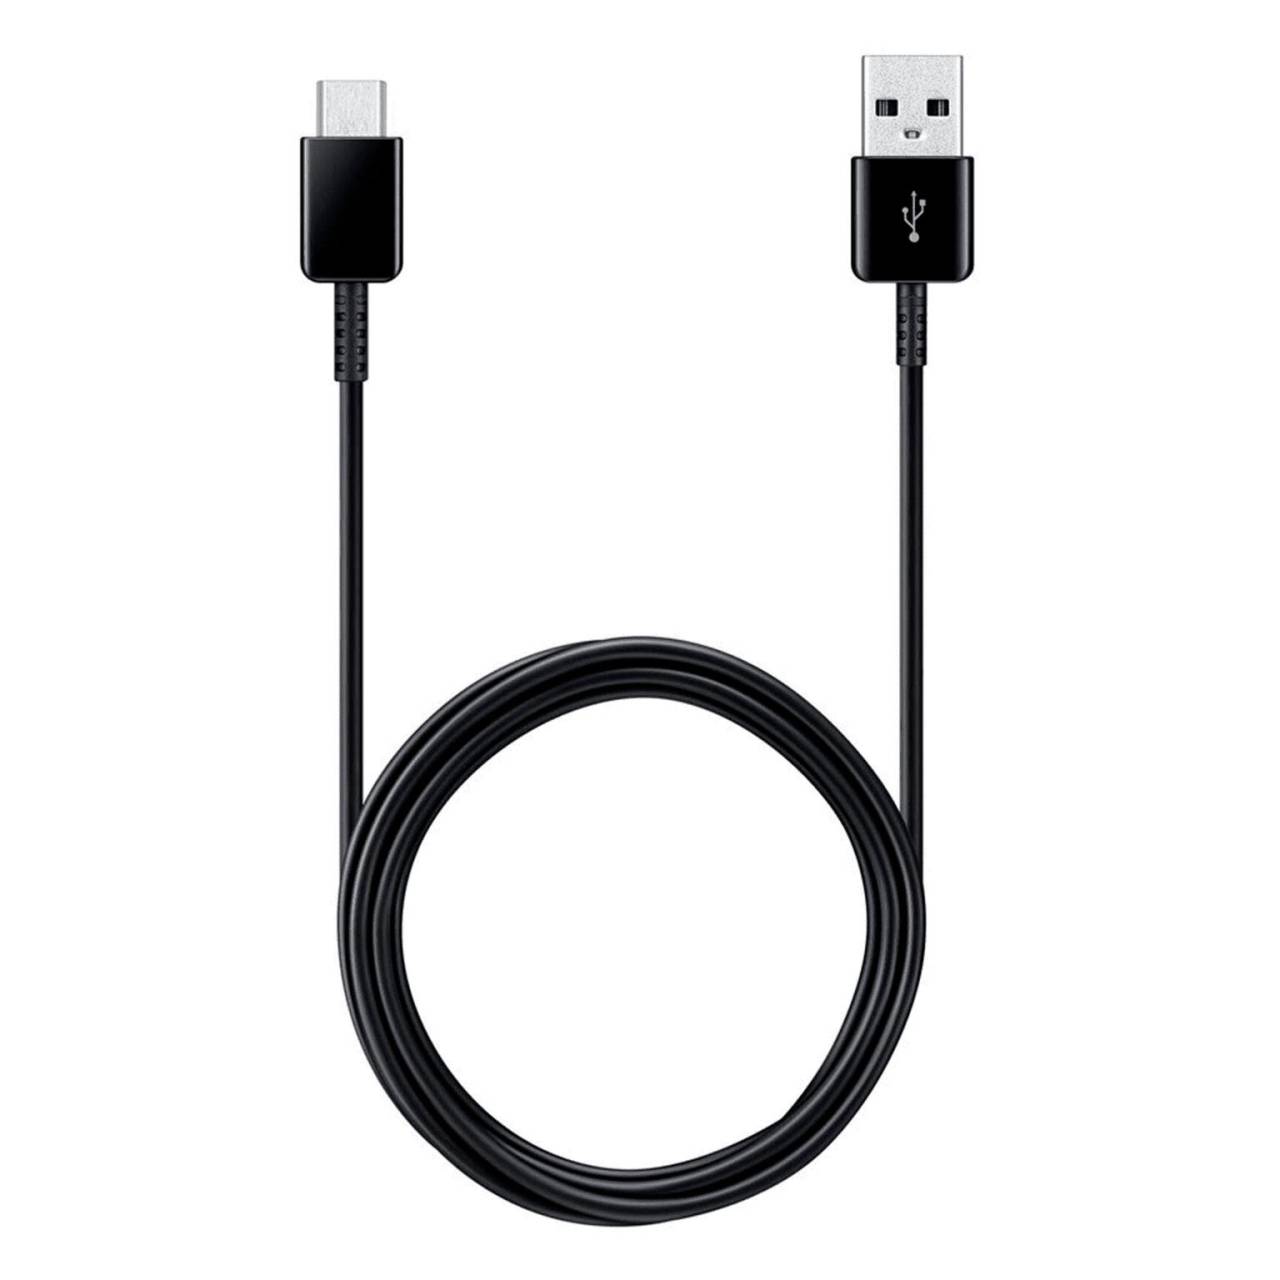 Samsung Ladekabel – USB-A auf USB-C für Smartphones und andere Geräte, Schnellladekabel, Länge 1,5 m